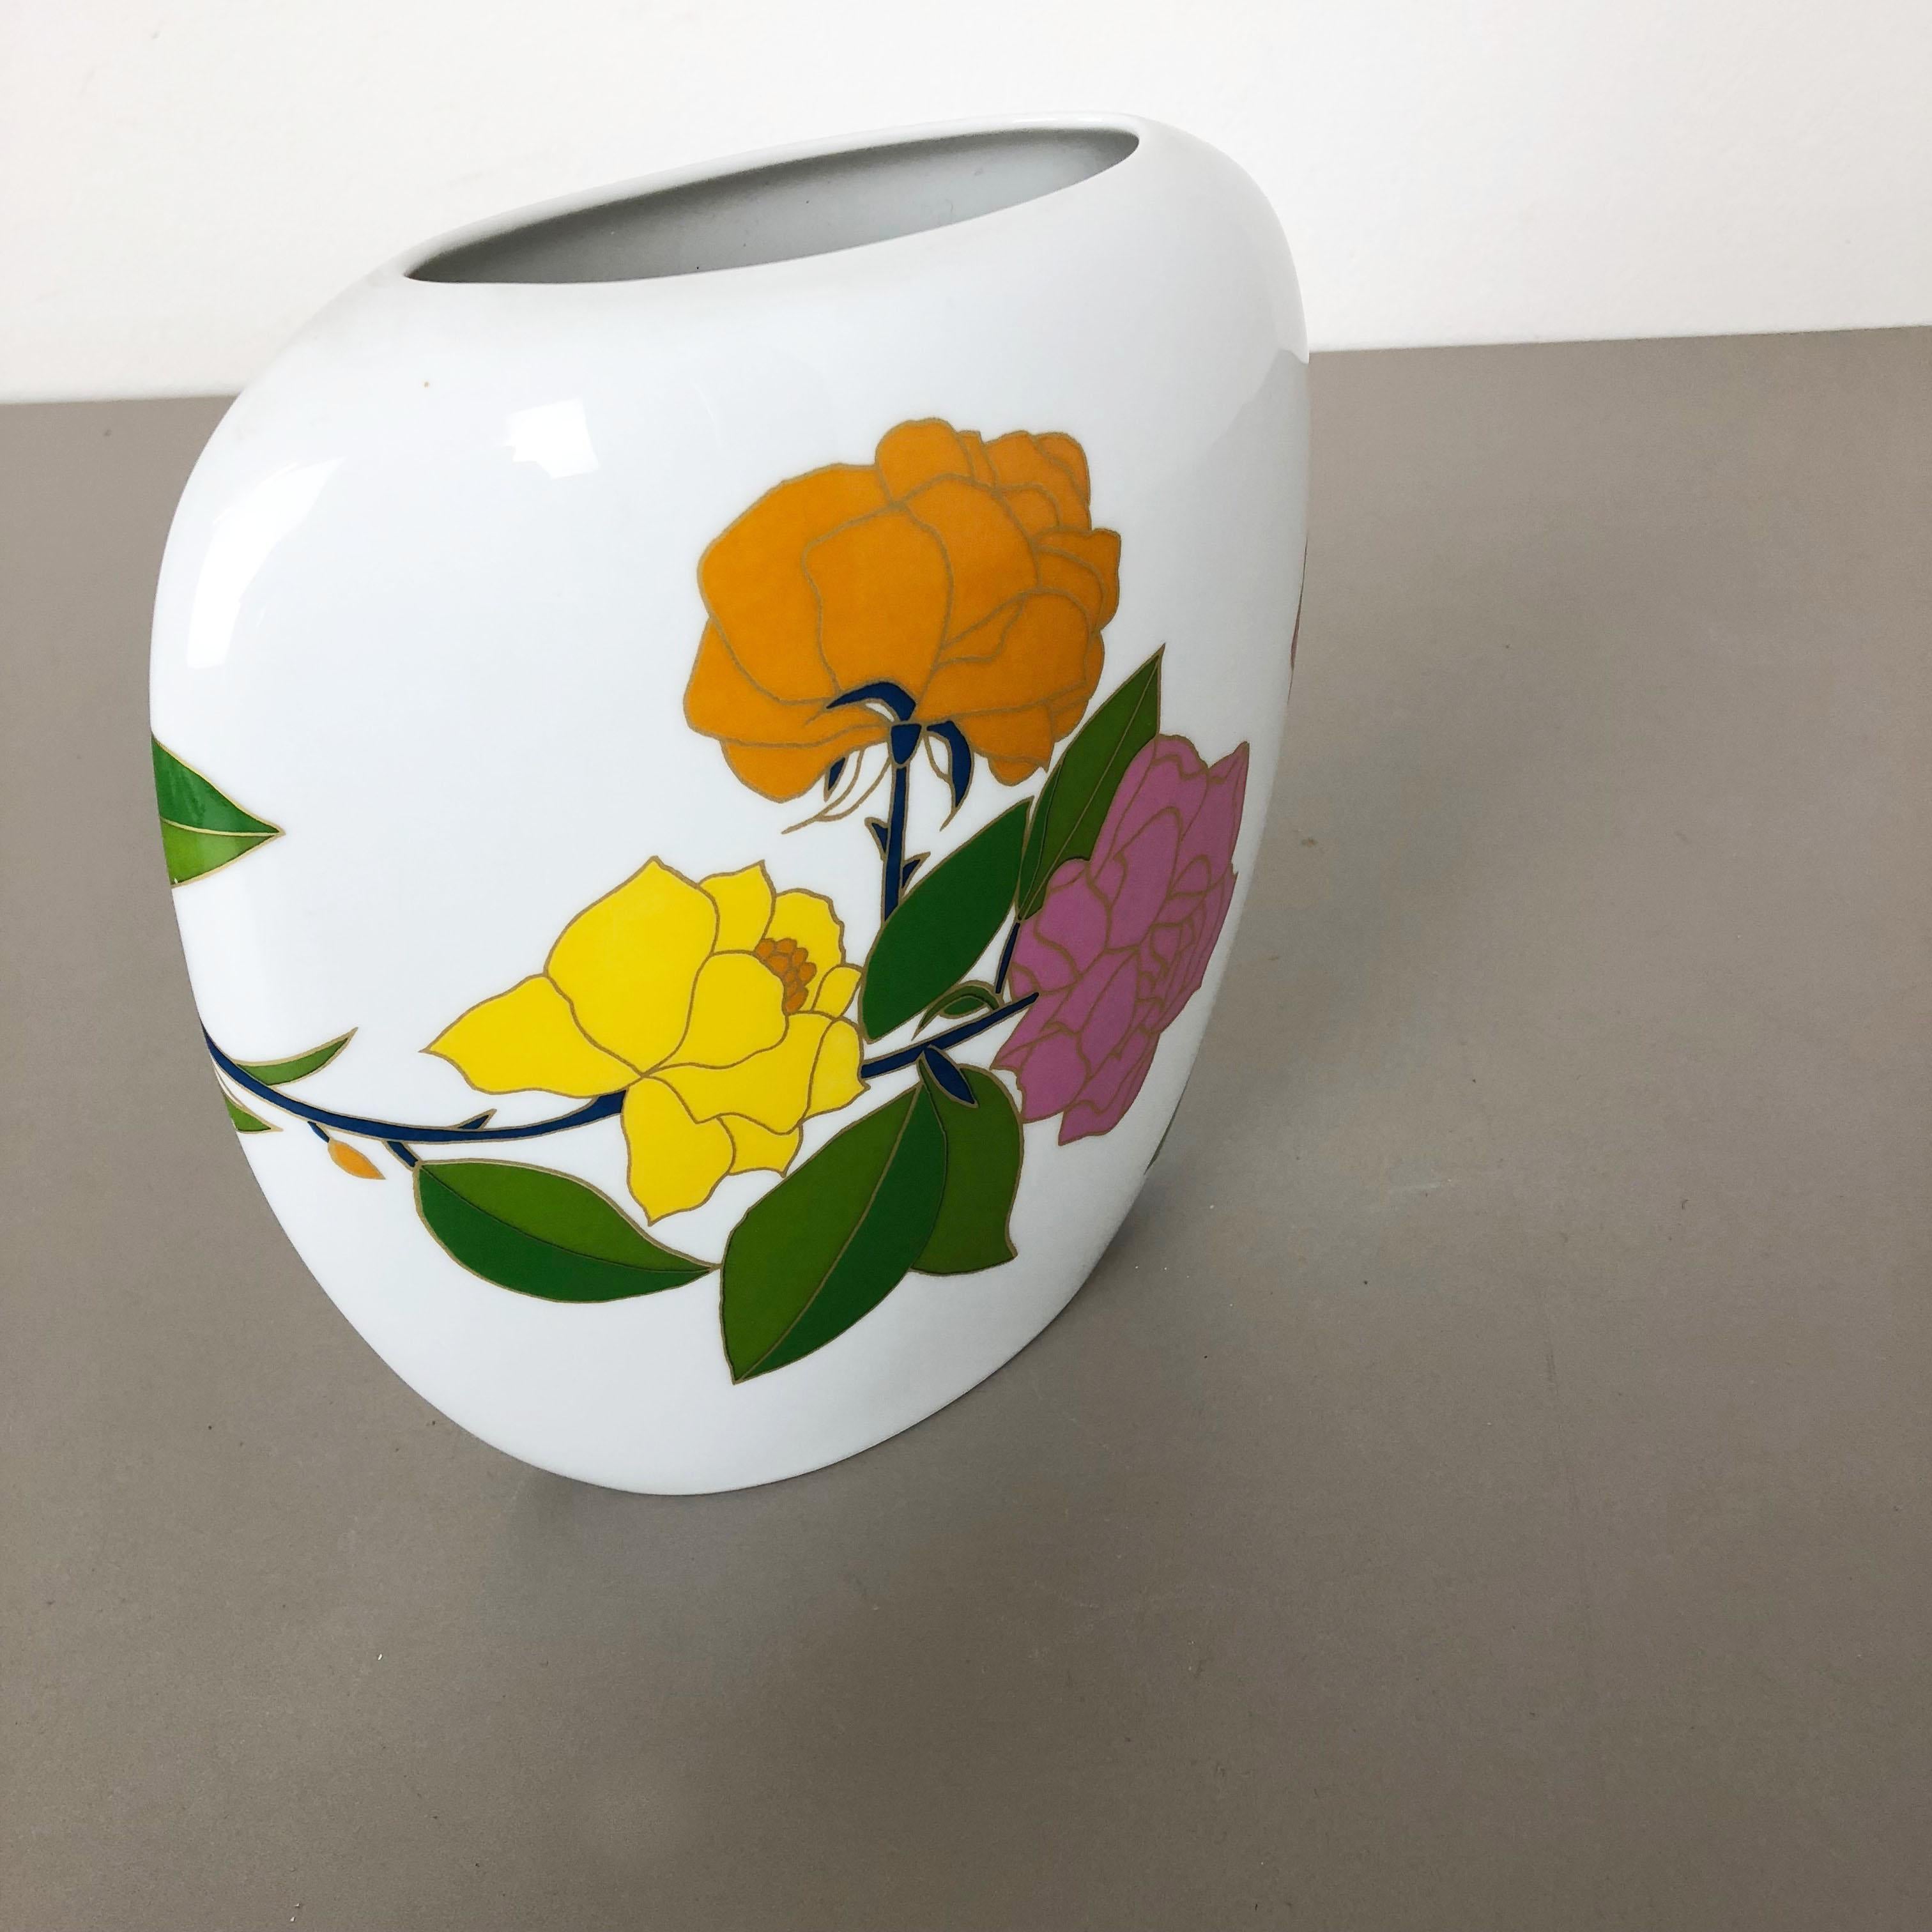 Colorful 1970s Art Vase Floral Porcelain Vase by W. Bauer for Rosenthal, Germany 1